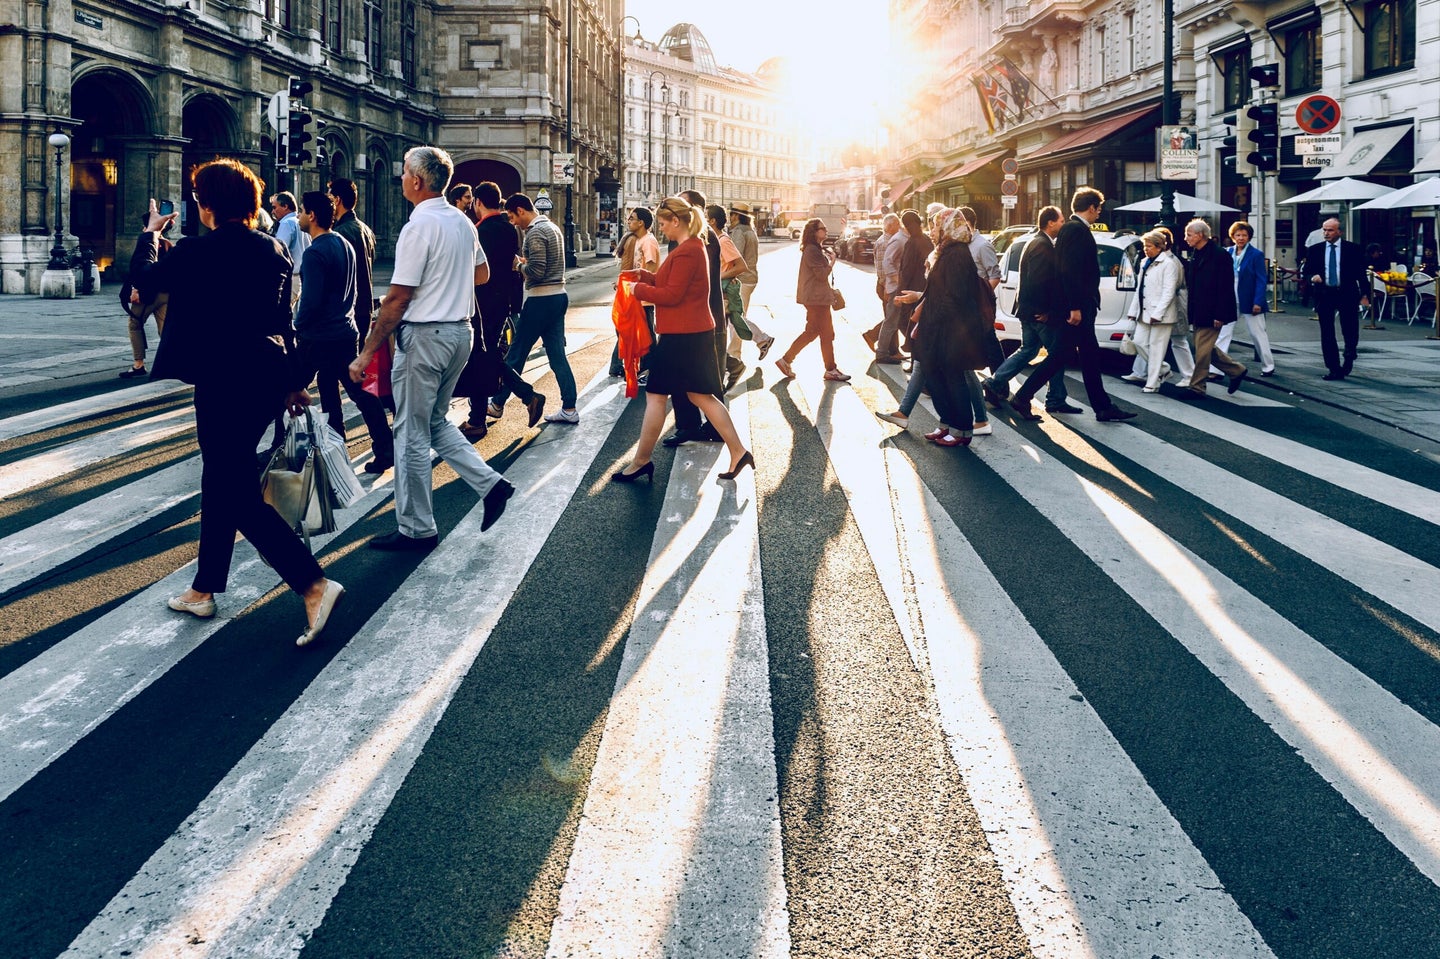 Pedestrians in Vienna, Austria.